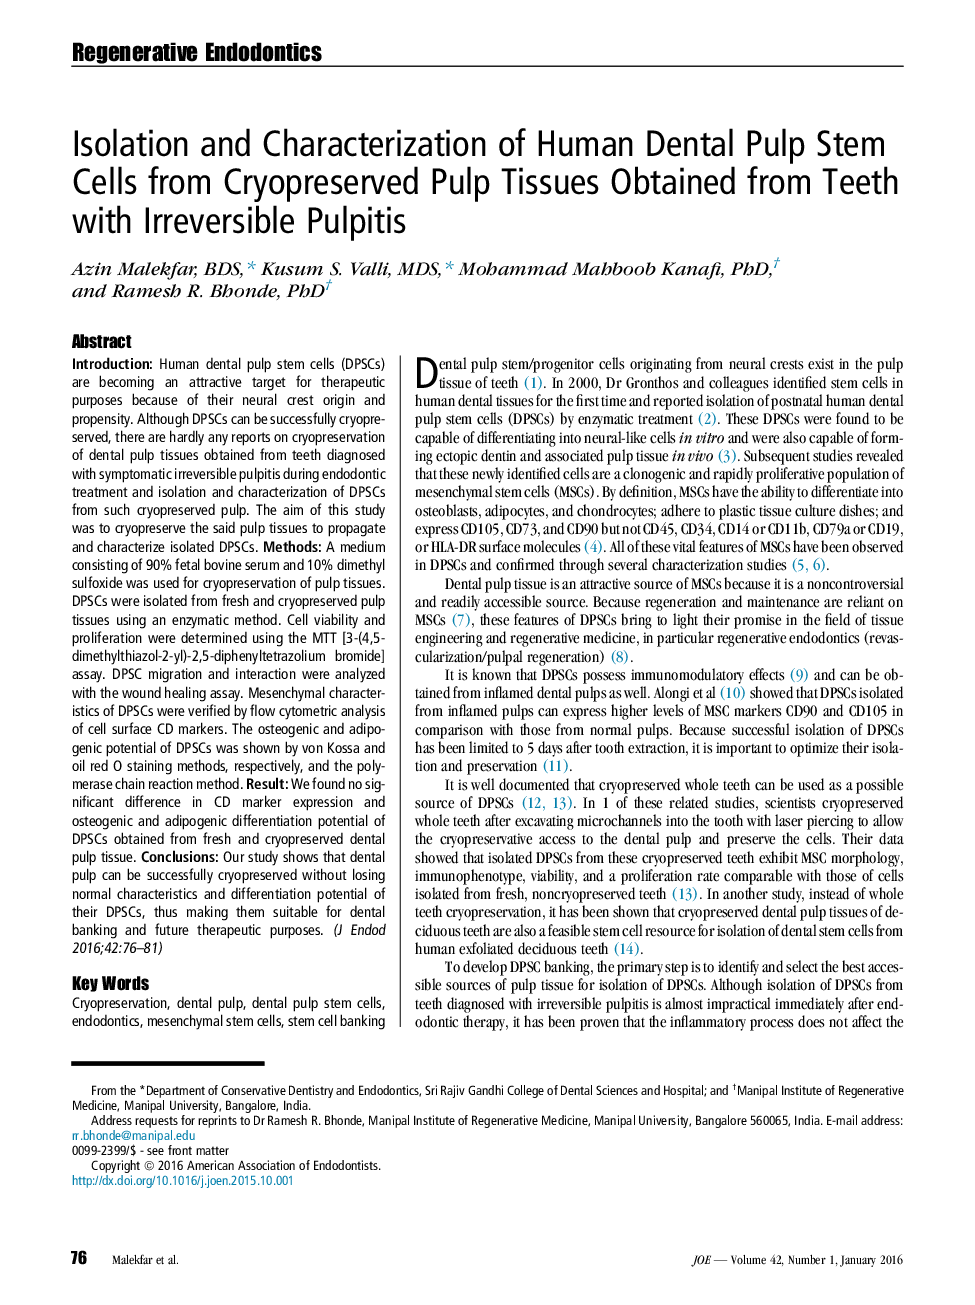 جداسازی و مشخص ساختن سلول های بنیادی پالپ دندان انسان از سلول های بنیادی محافظت شده از جنس مخلوط شده از دندان ها با پالپیت برگشت ناپذیر 